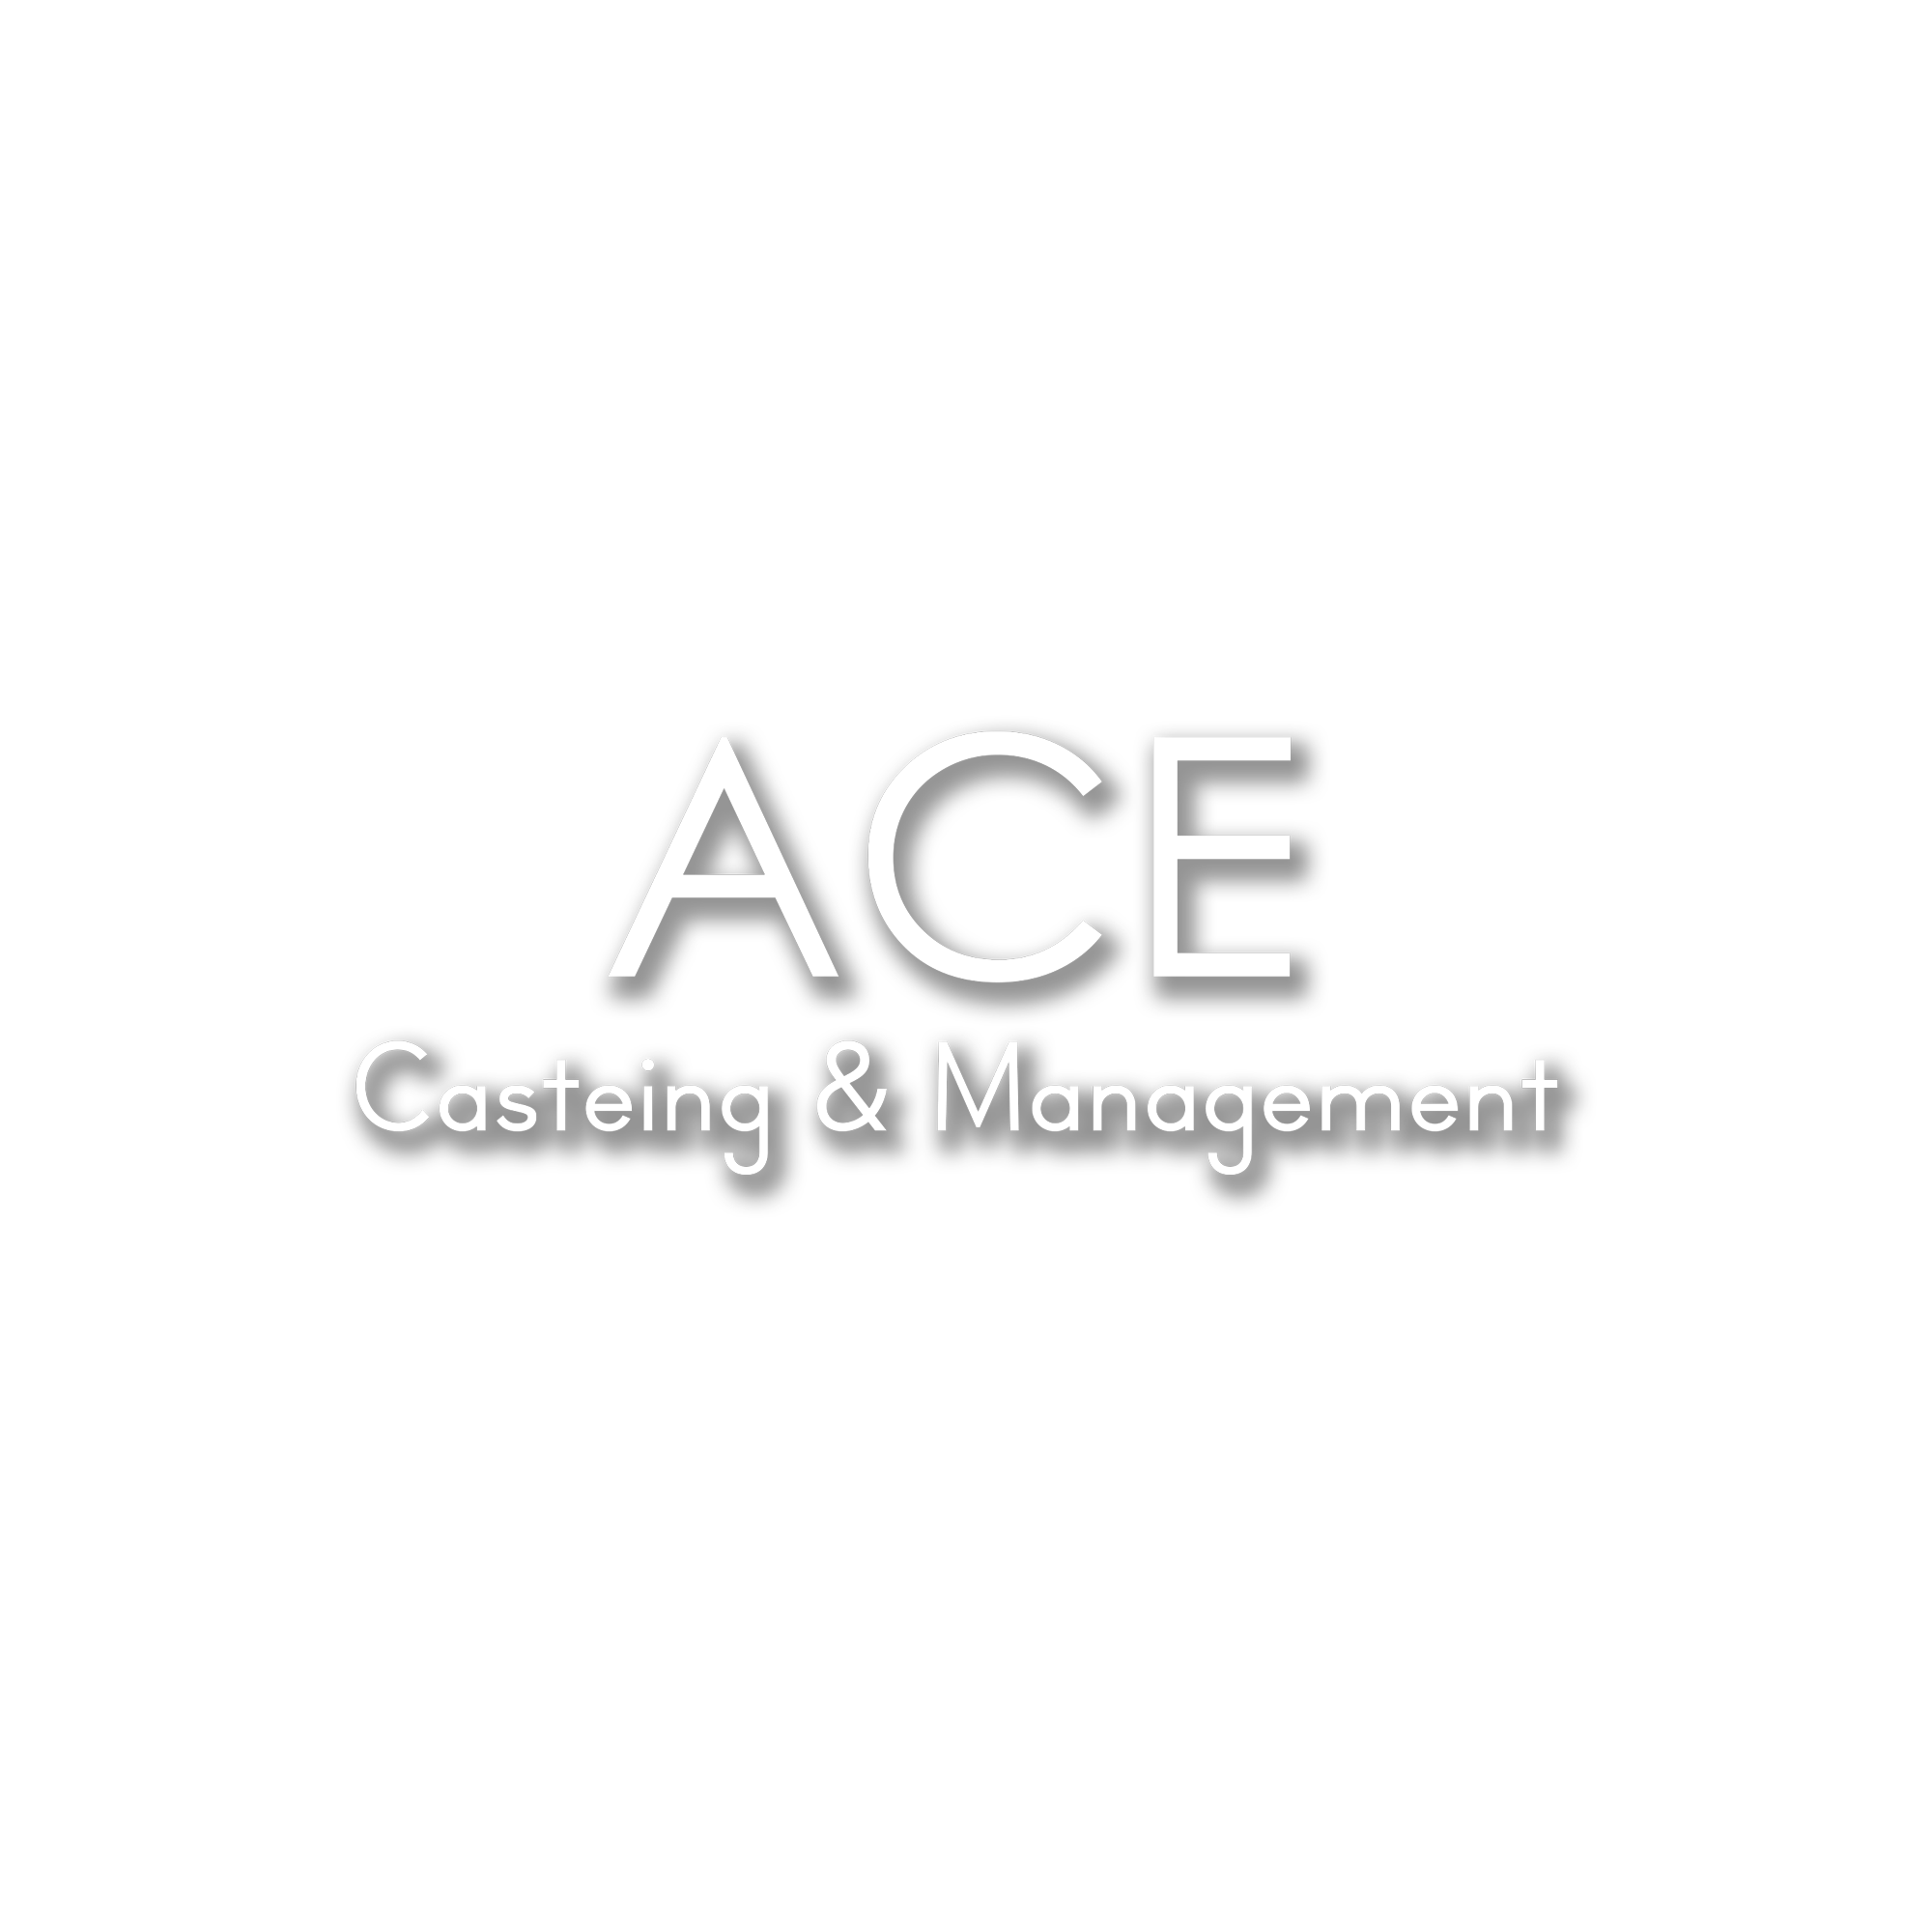 Ace エース ヘアメイク スタイリスト フォトグラファー モデルキャスティング Ace エース は 渋谷を拠点とするカメラマン スタイリスト モデル キャスティング事務所です 在籍するヘアメイク カメラマン スタイリストは第一線で活躍しており あらゆる